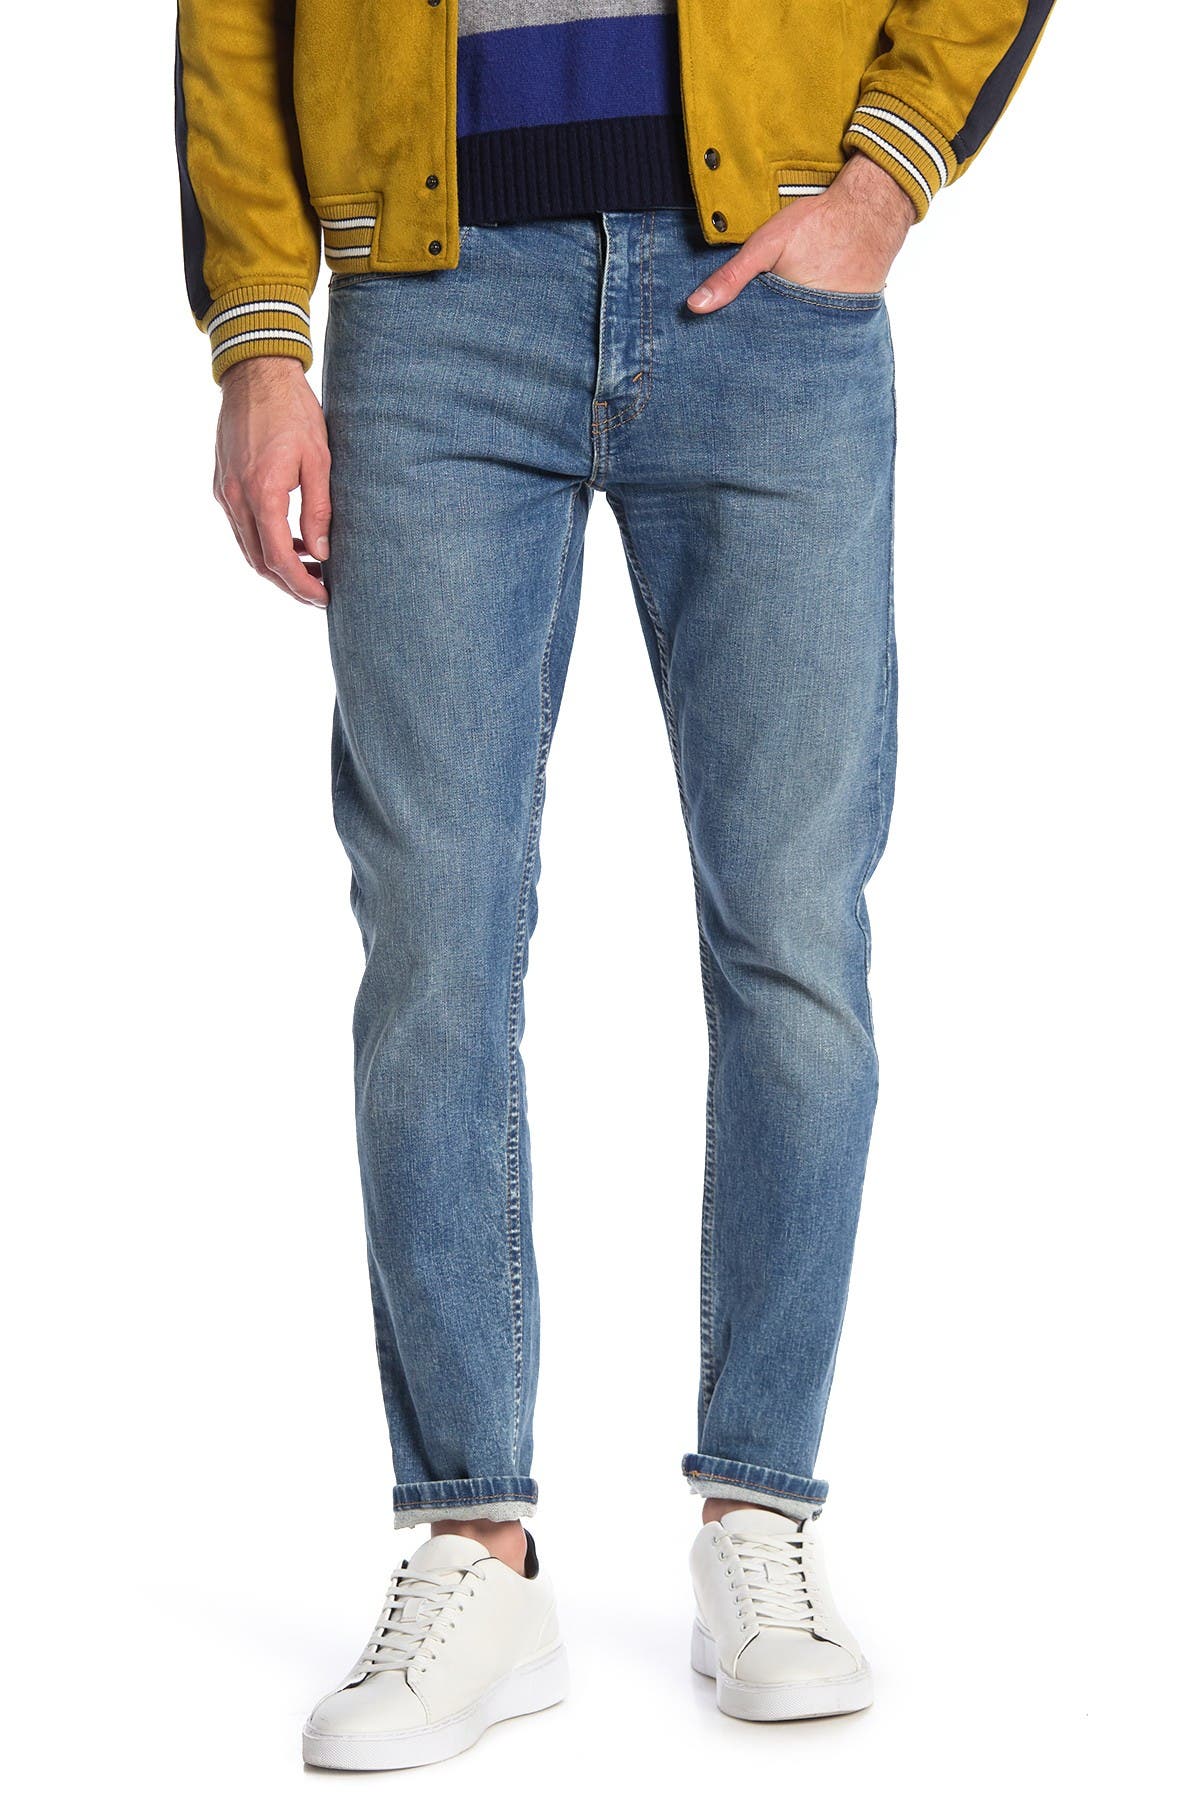 Levi's | 512 Slim Taper Fit Jeans - 30 